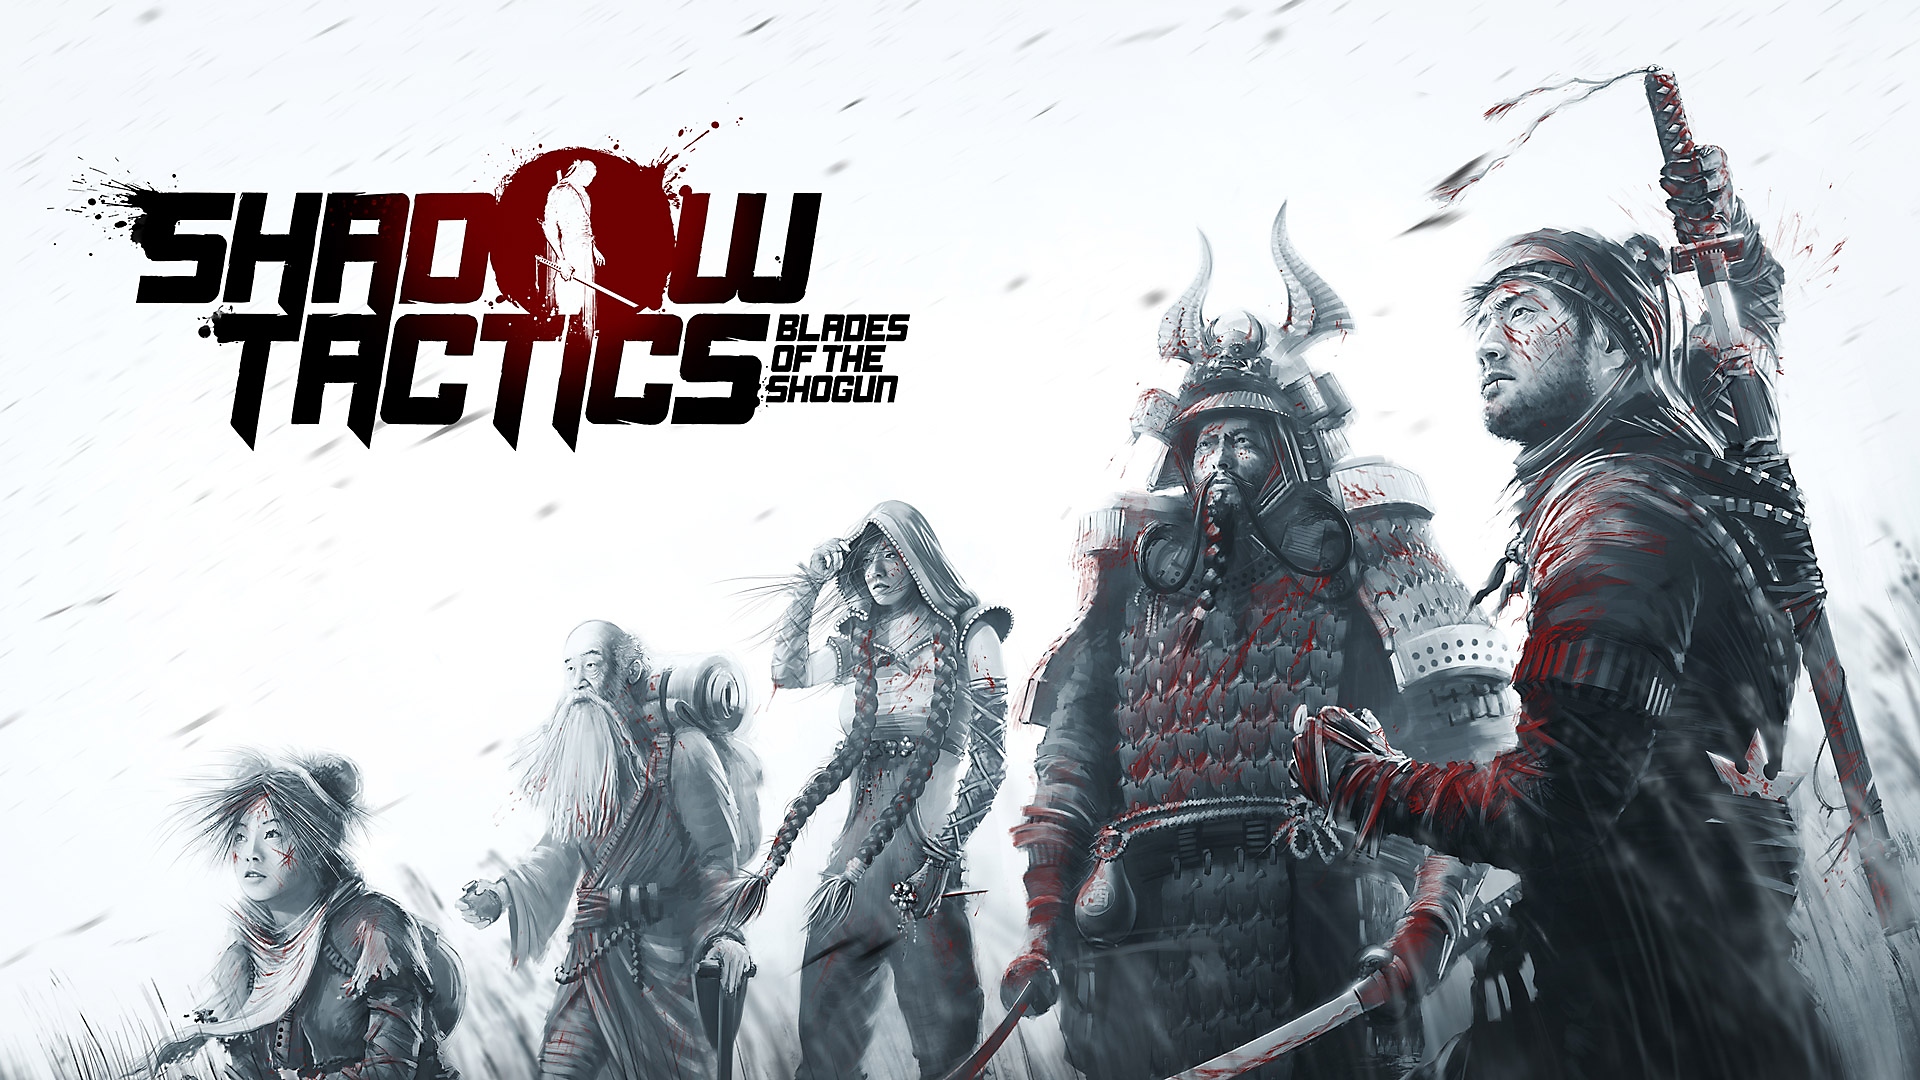 Shadow Tactics: Blades of the Shogun – promokuvitusta viidestä päähahmosta mustavalkoisena lyijykynäluonnoksena.